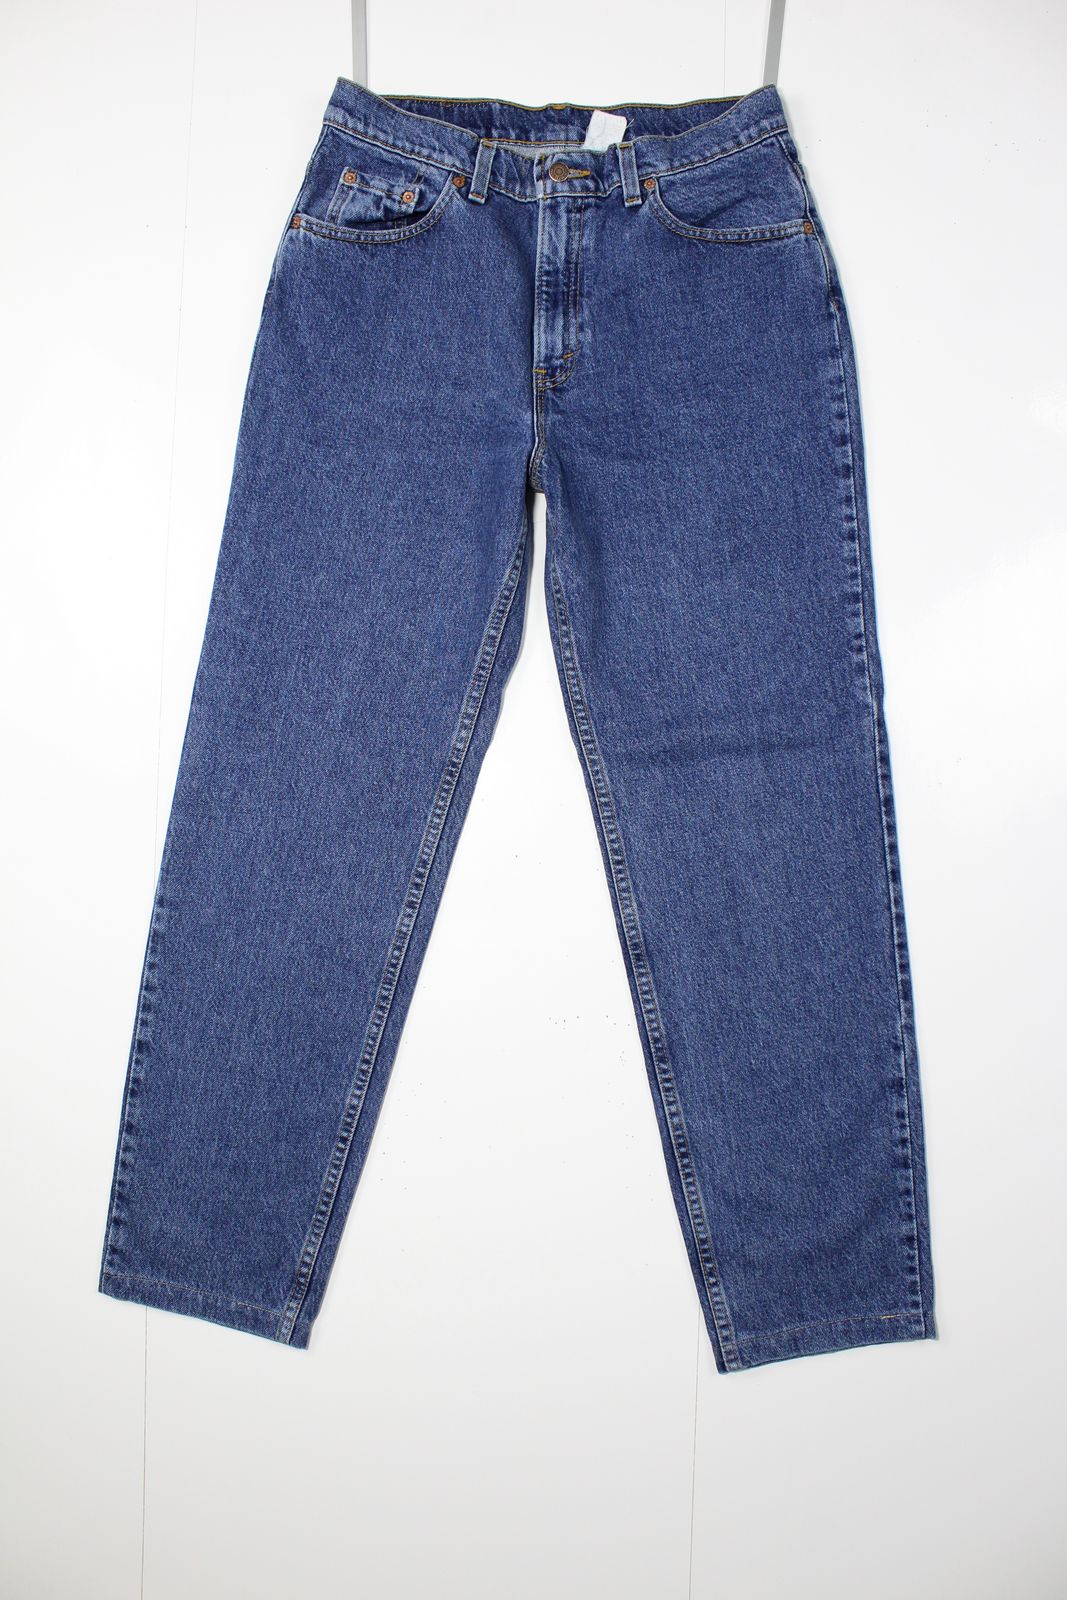 Levi's 506 denim Donna Tg. 12 Med  Made In USA Jeans Vintage